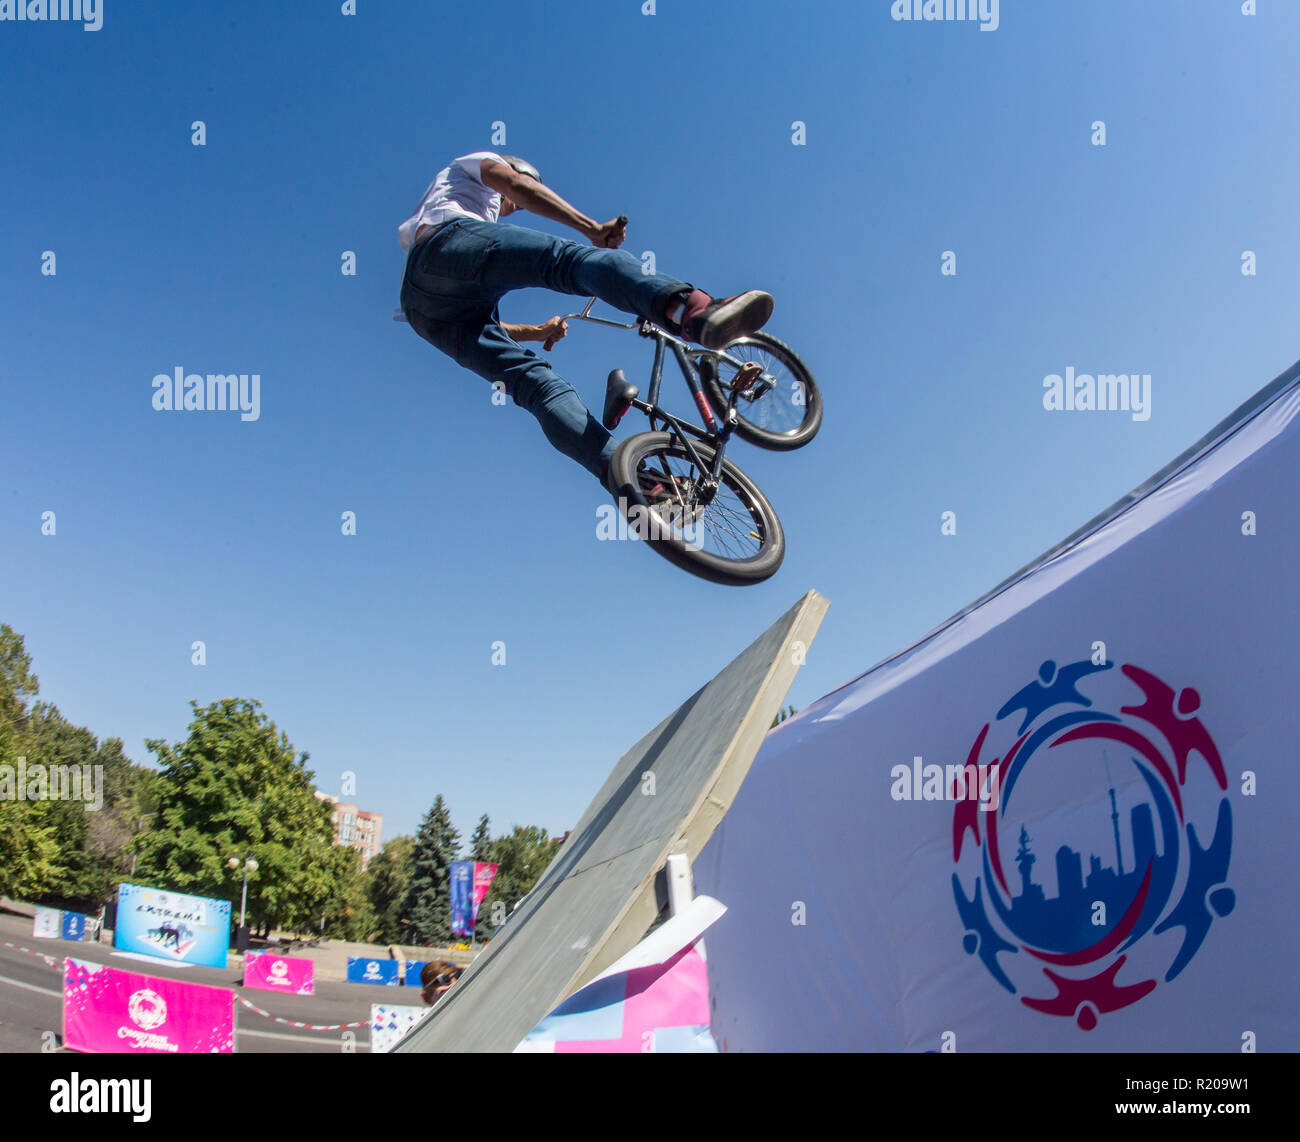 KAZAKHSTAN ALMATY - août 28, 2016 : la concurrence extrême en milieu urbain, où la ville les athlètes concourent dans les disciplines : planche à roulettes, patins à roulettes, BMX. Stunt Bmx effectuée en haut de la mini rampe sur un skatepark. Banque D'Images